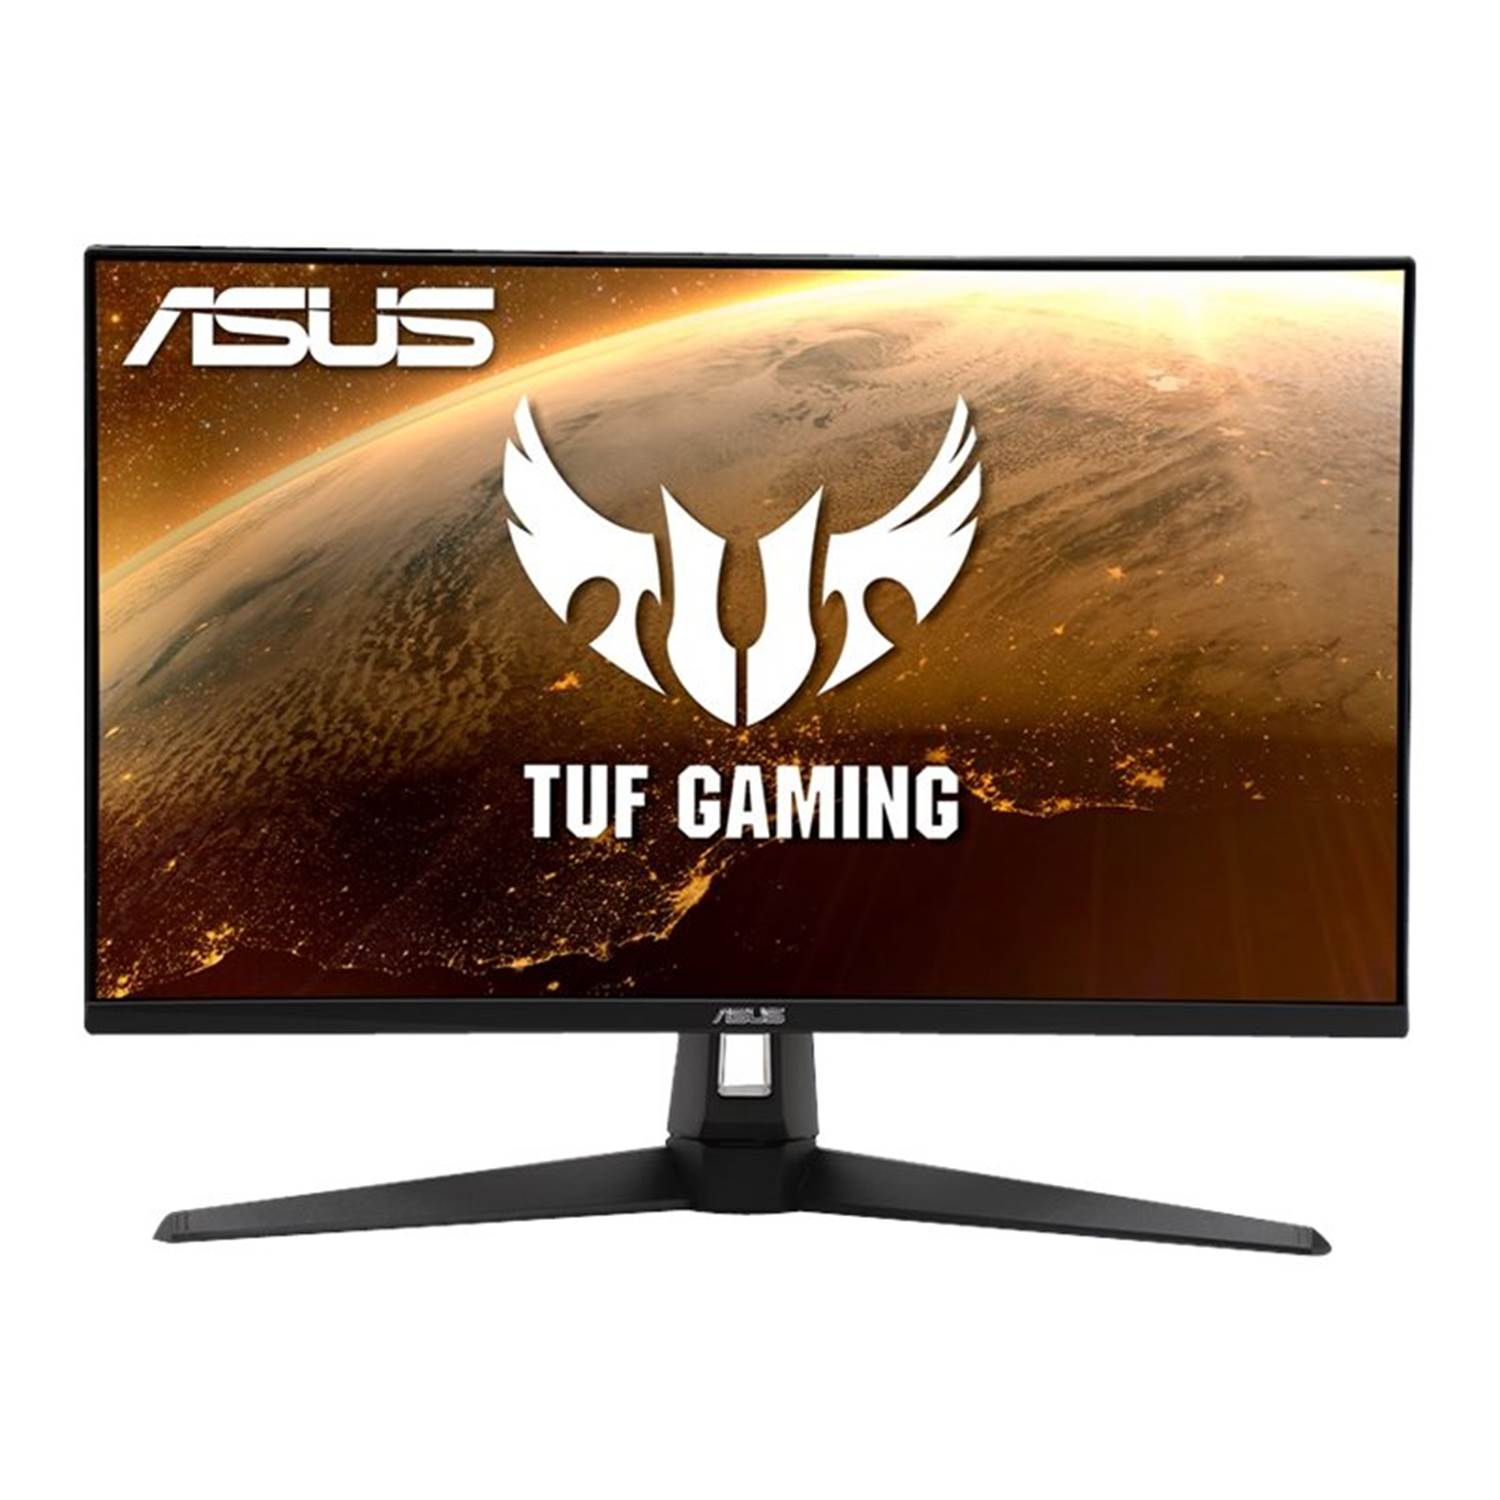 Asus TUF Gaming VG279Q1A